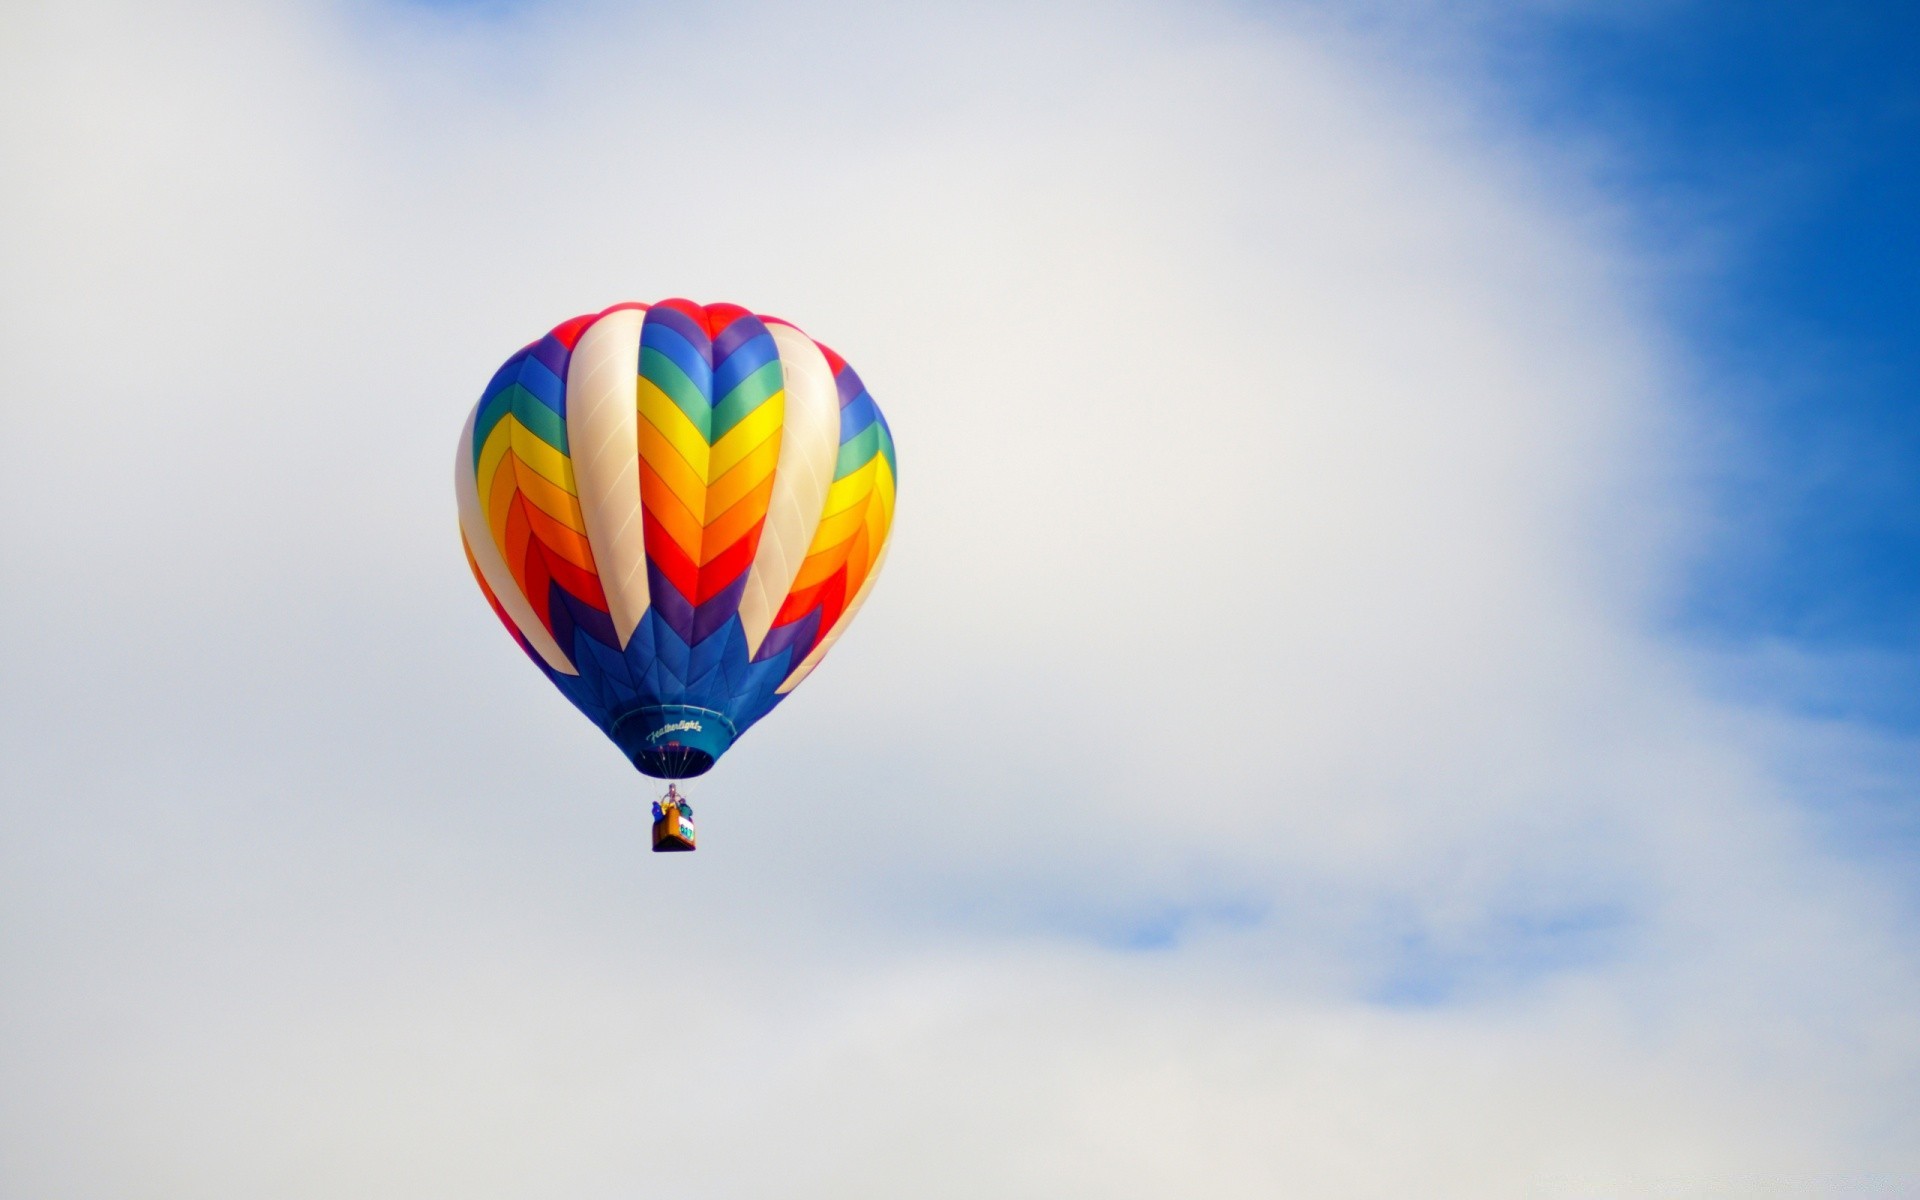 небо воздушный шар небо свобода воздуха рейс горячая-воздушный шар летать ветер на открытом воздухе дневной свет плавание путешествия приключения удовольствие высокая самолет